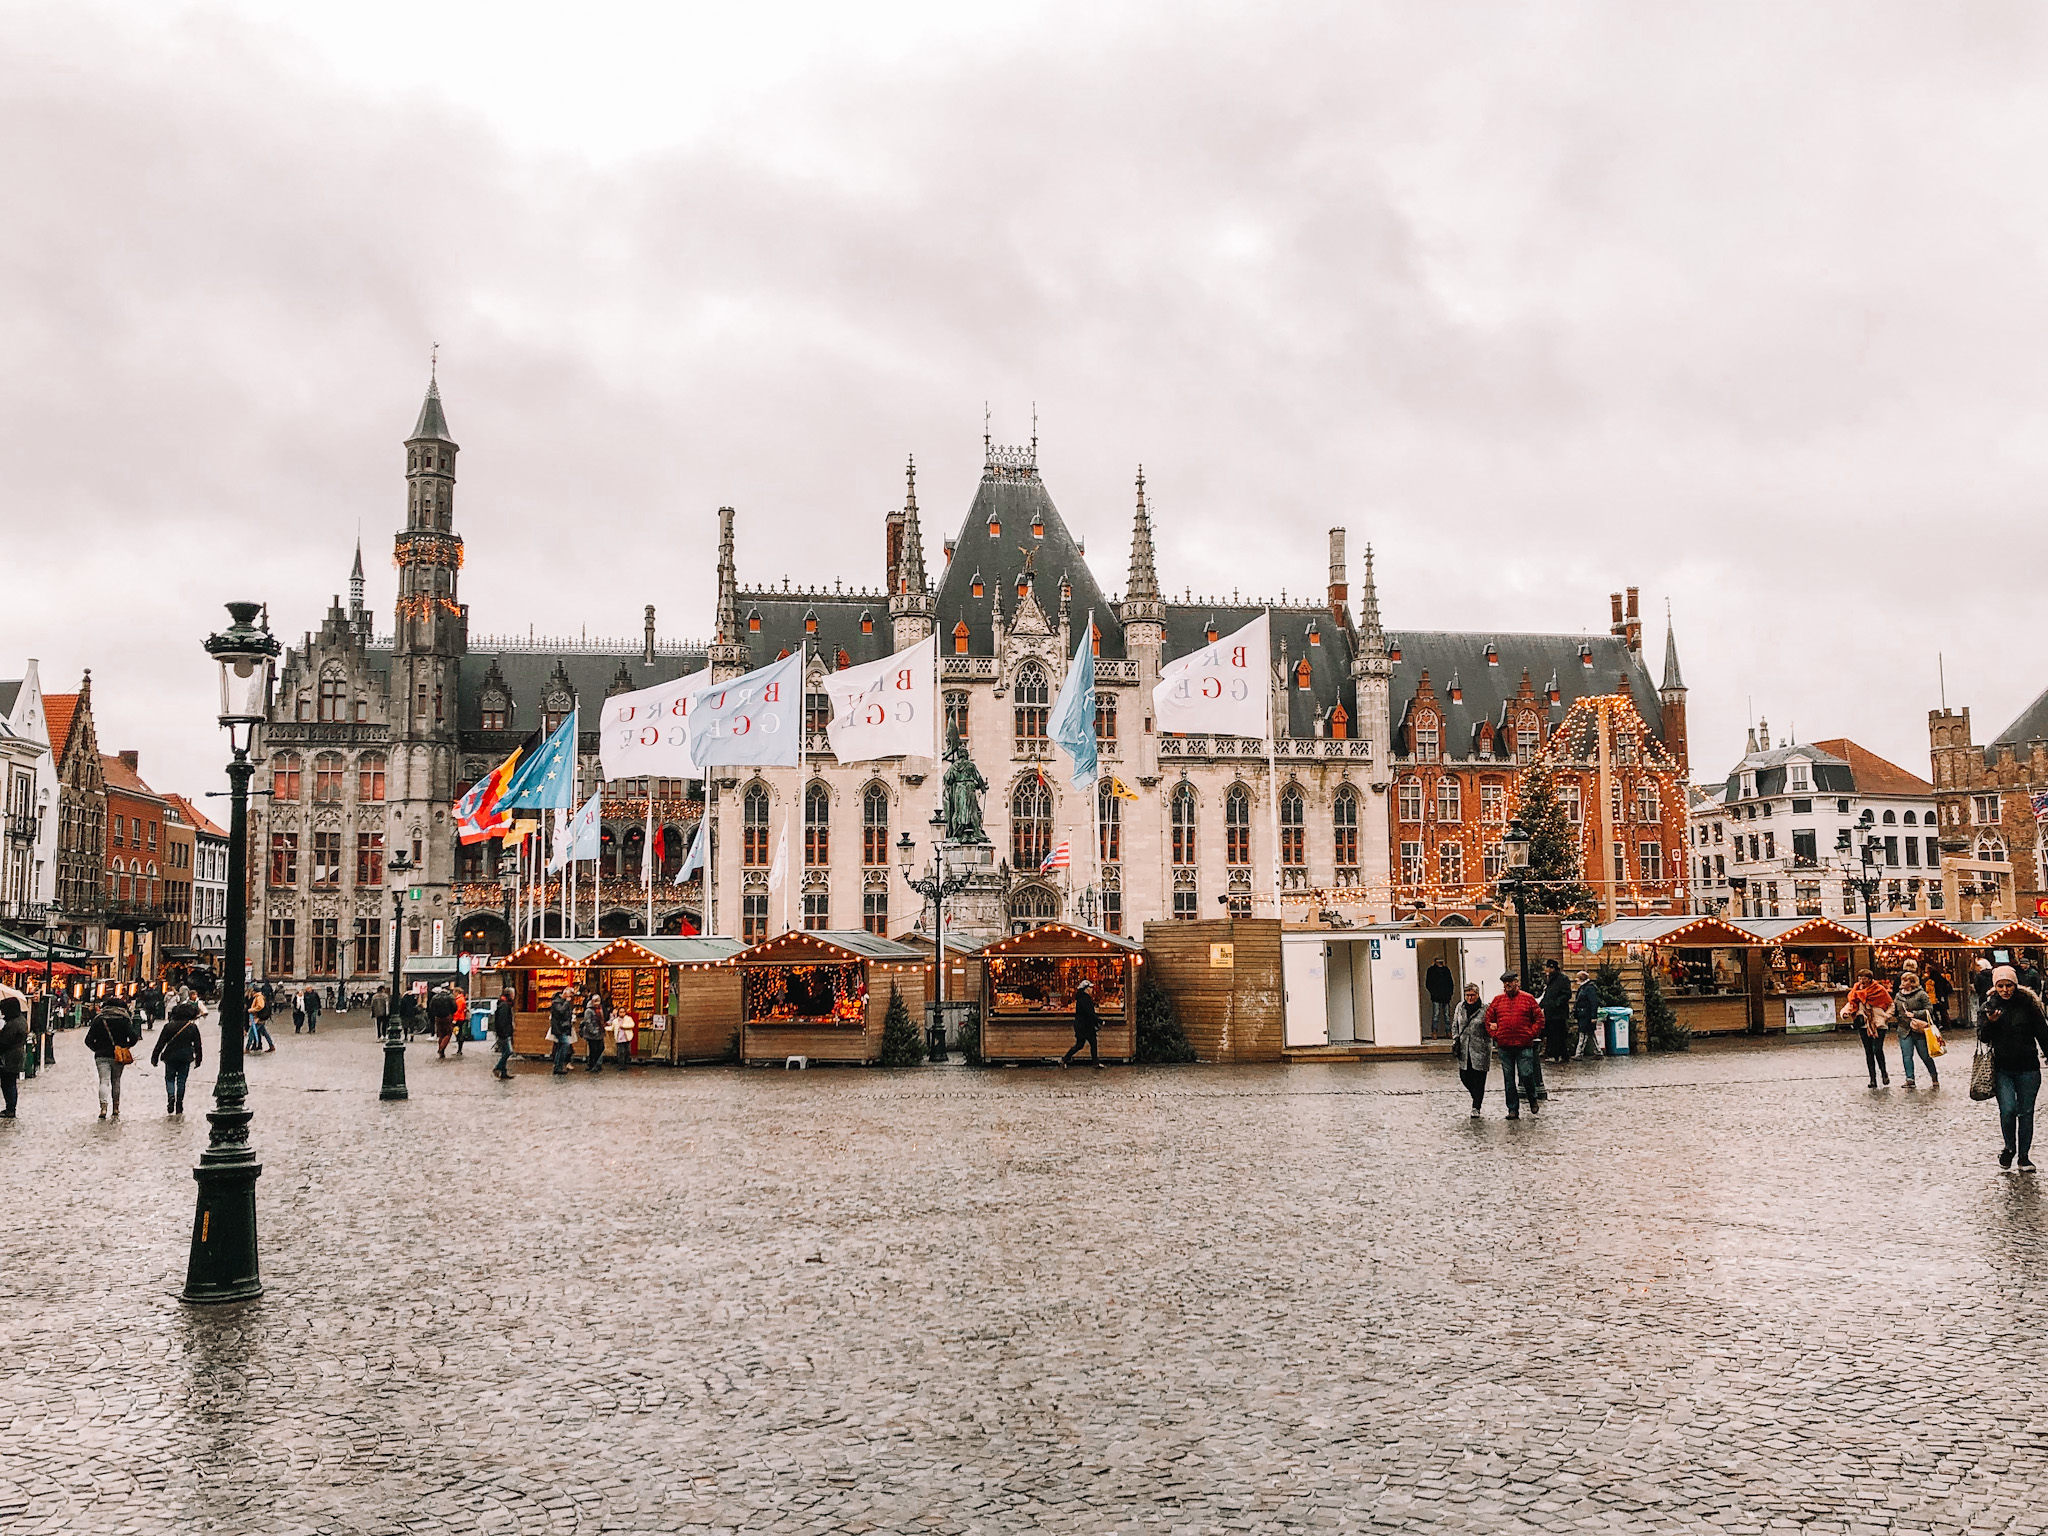 Day 5 – Bruges